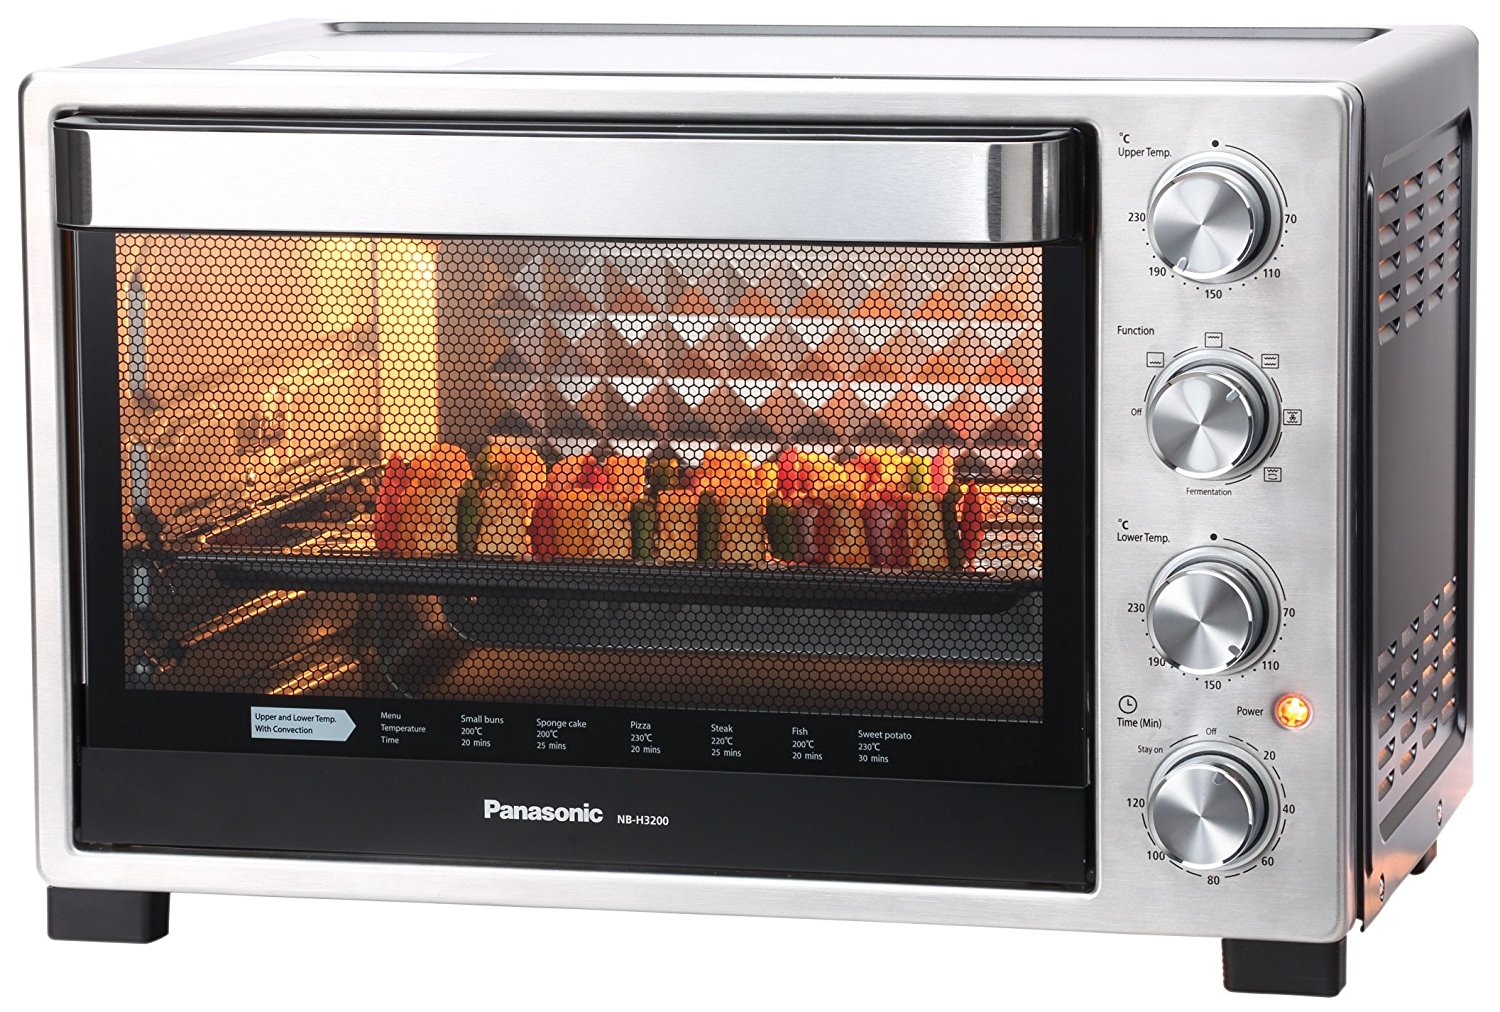 Baking Oven Provider Company